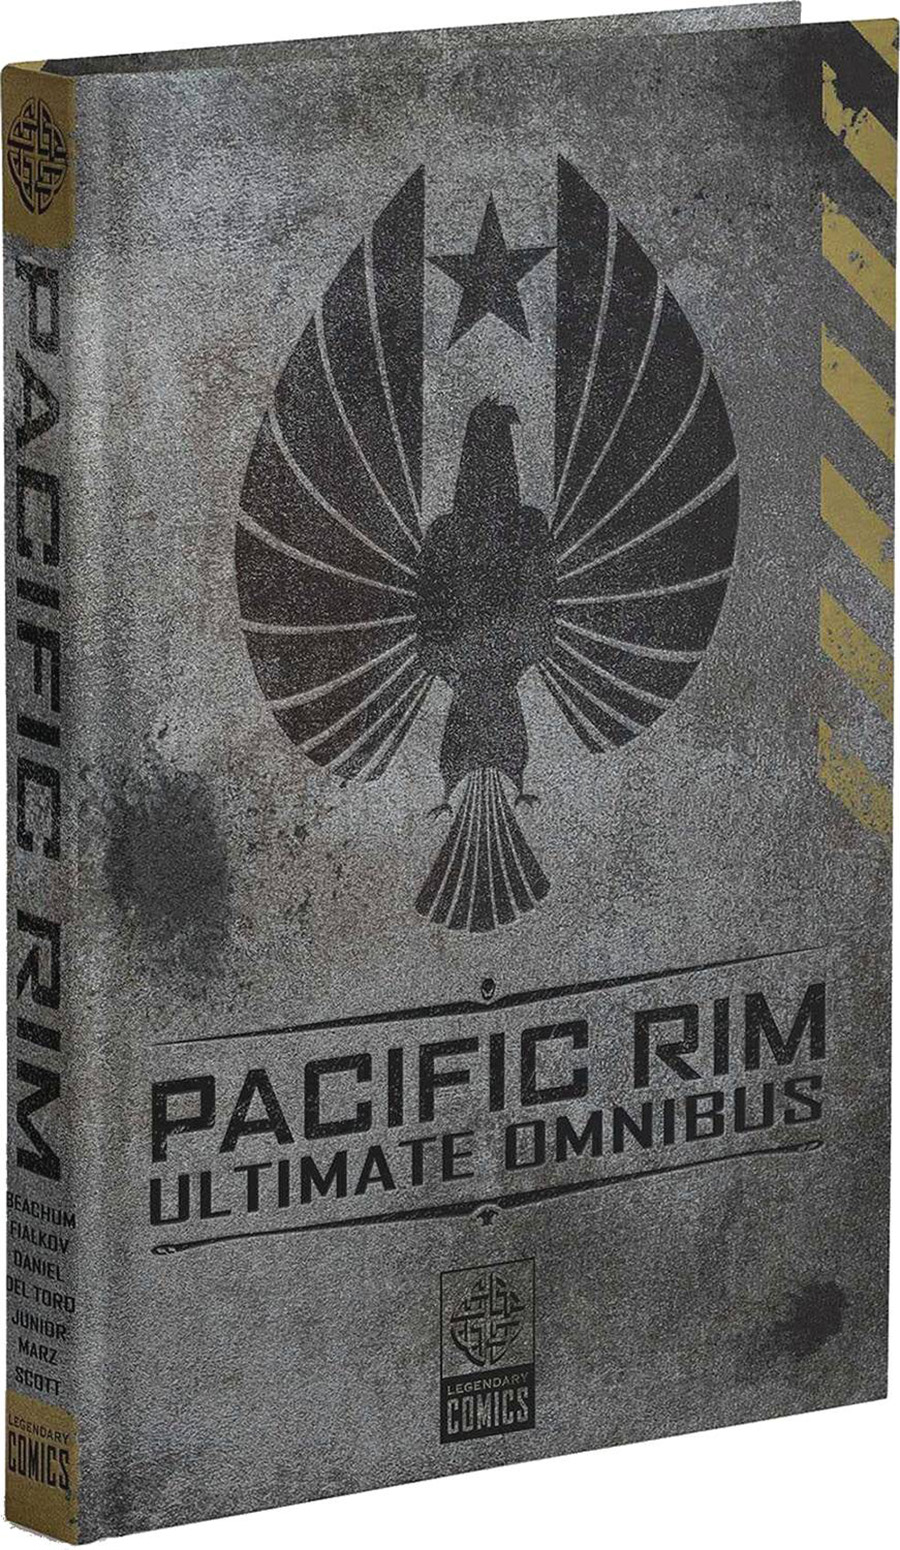 Pacific Rim Ultimate Omnibus HC